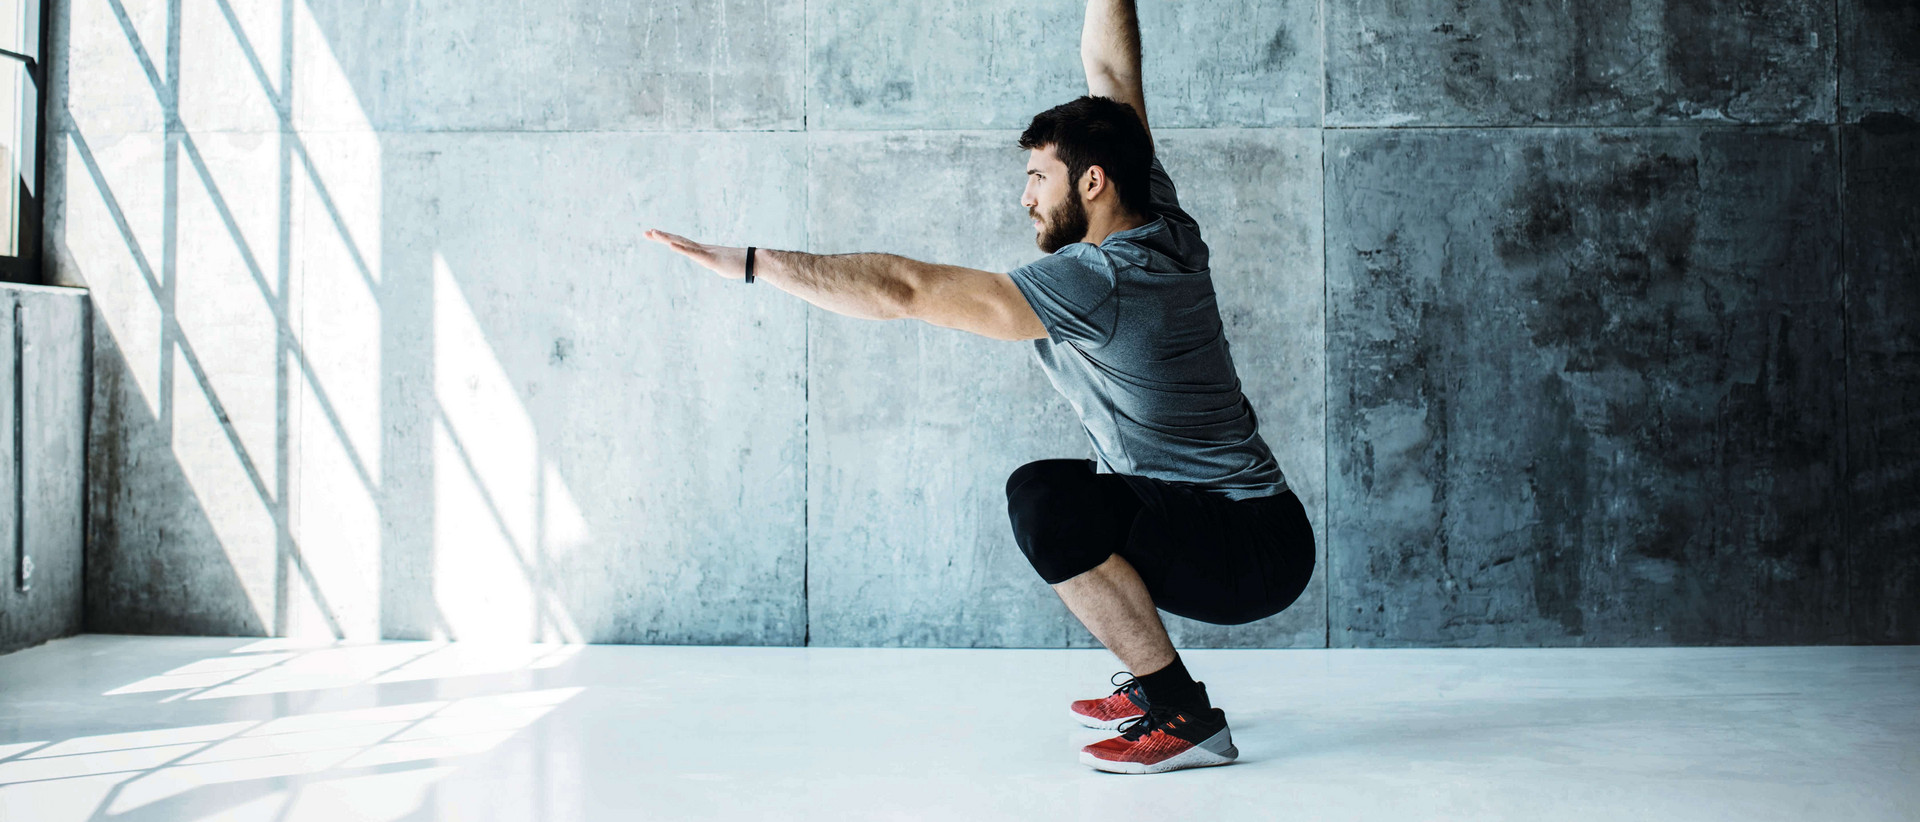 Ein Mann steht in einer kargen Fitnesshalle vor grauer Betonwand in einer tief gebeugten Squat-Position. Sein linker Armer ist nach vorn ausgestreckt, mit dem rechten stemmt er ein Gewicht nach oben.